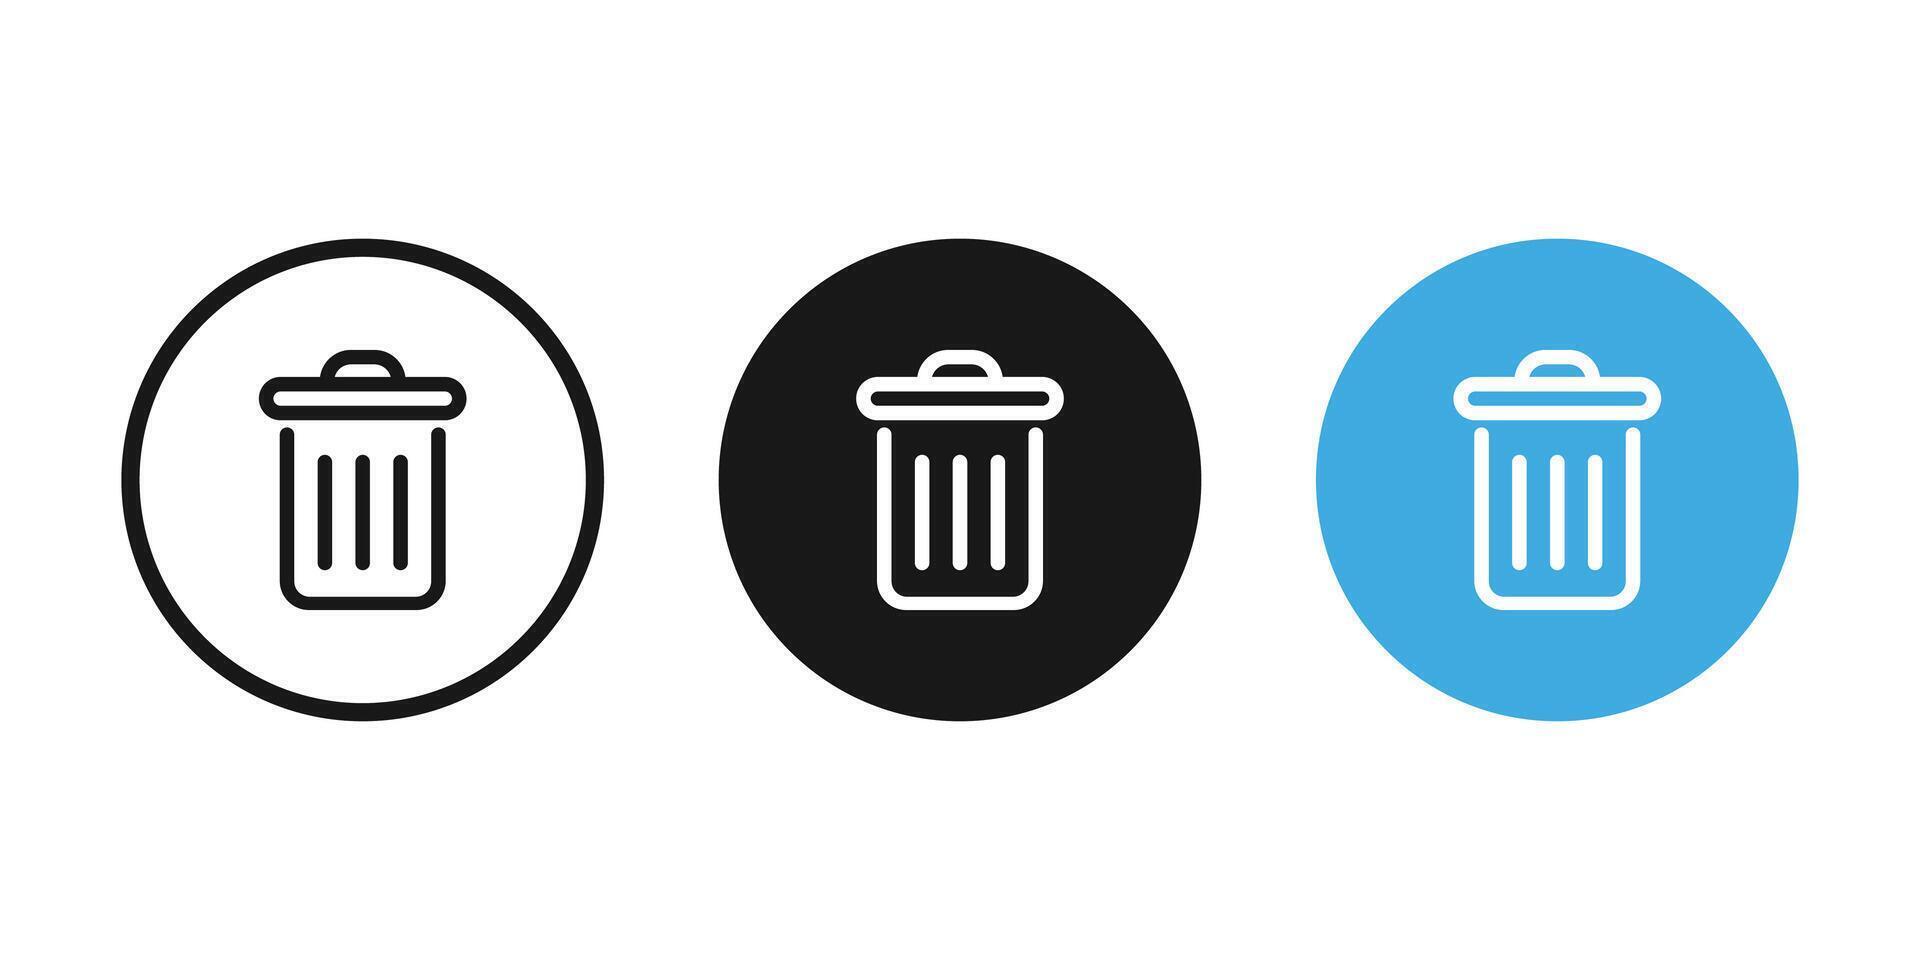 Lixo pode ícone, lixo, limpar \ limpo reciclar bin ícones. Lixo bin ícones. vetor